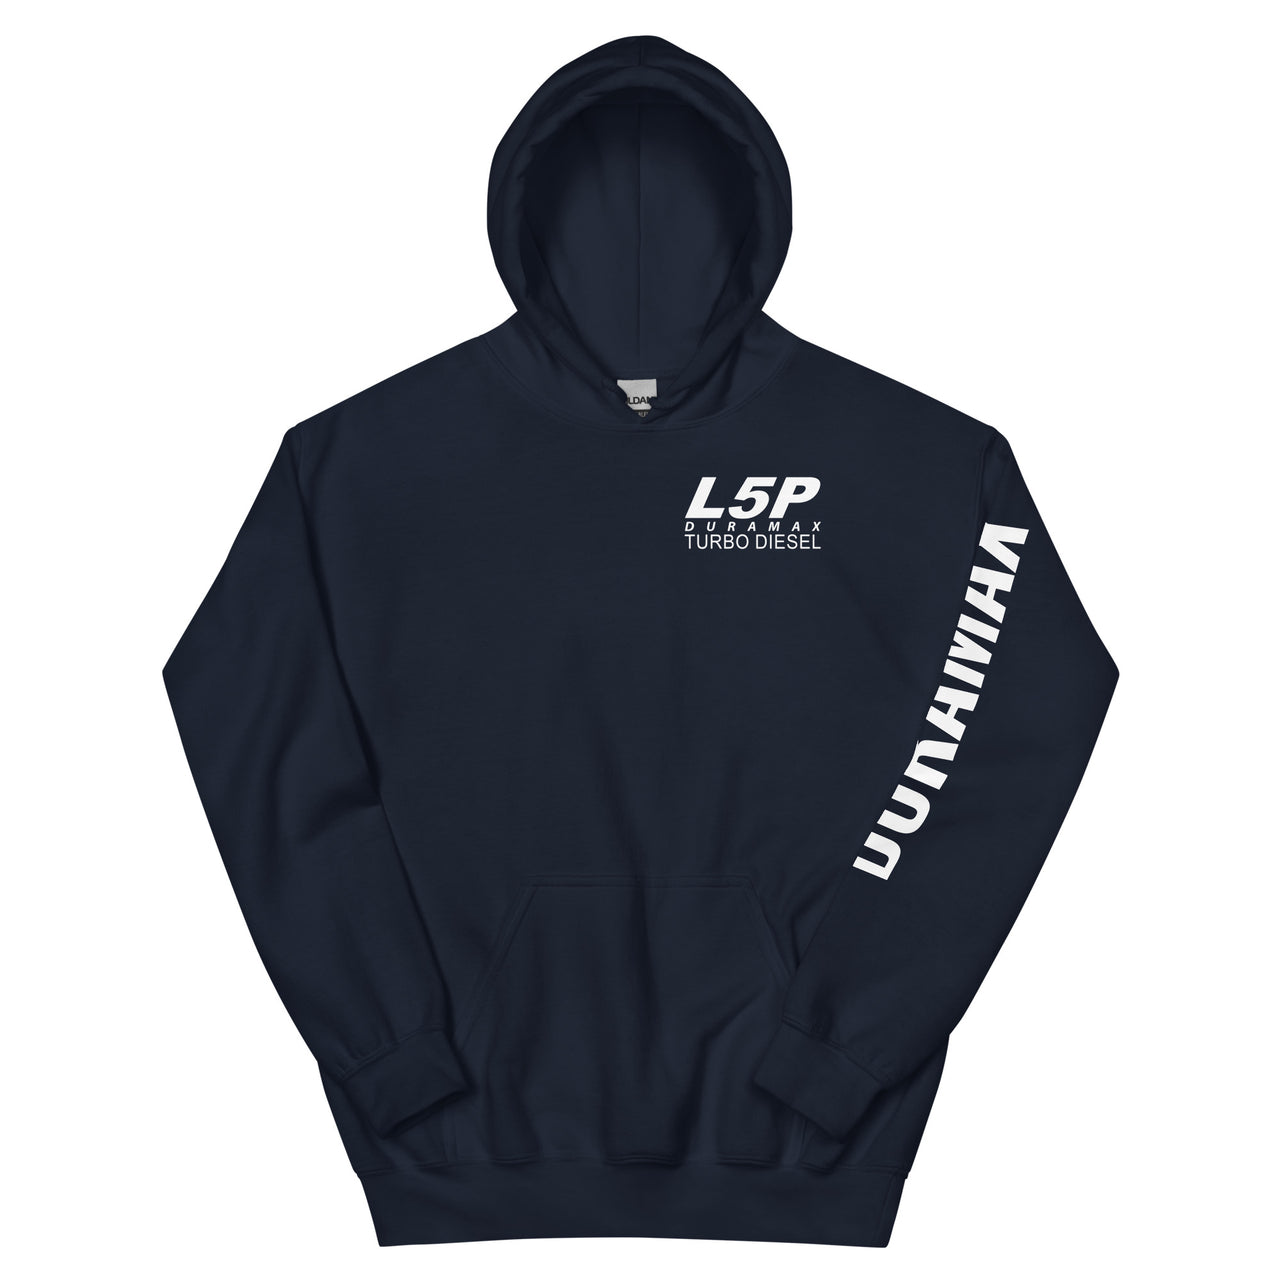 L5P Duramax Hoodie Pullover Sweatshirt With Sleeve Print - navy